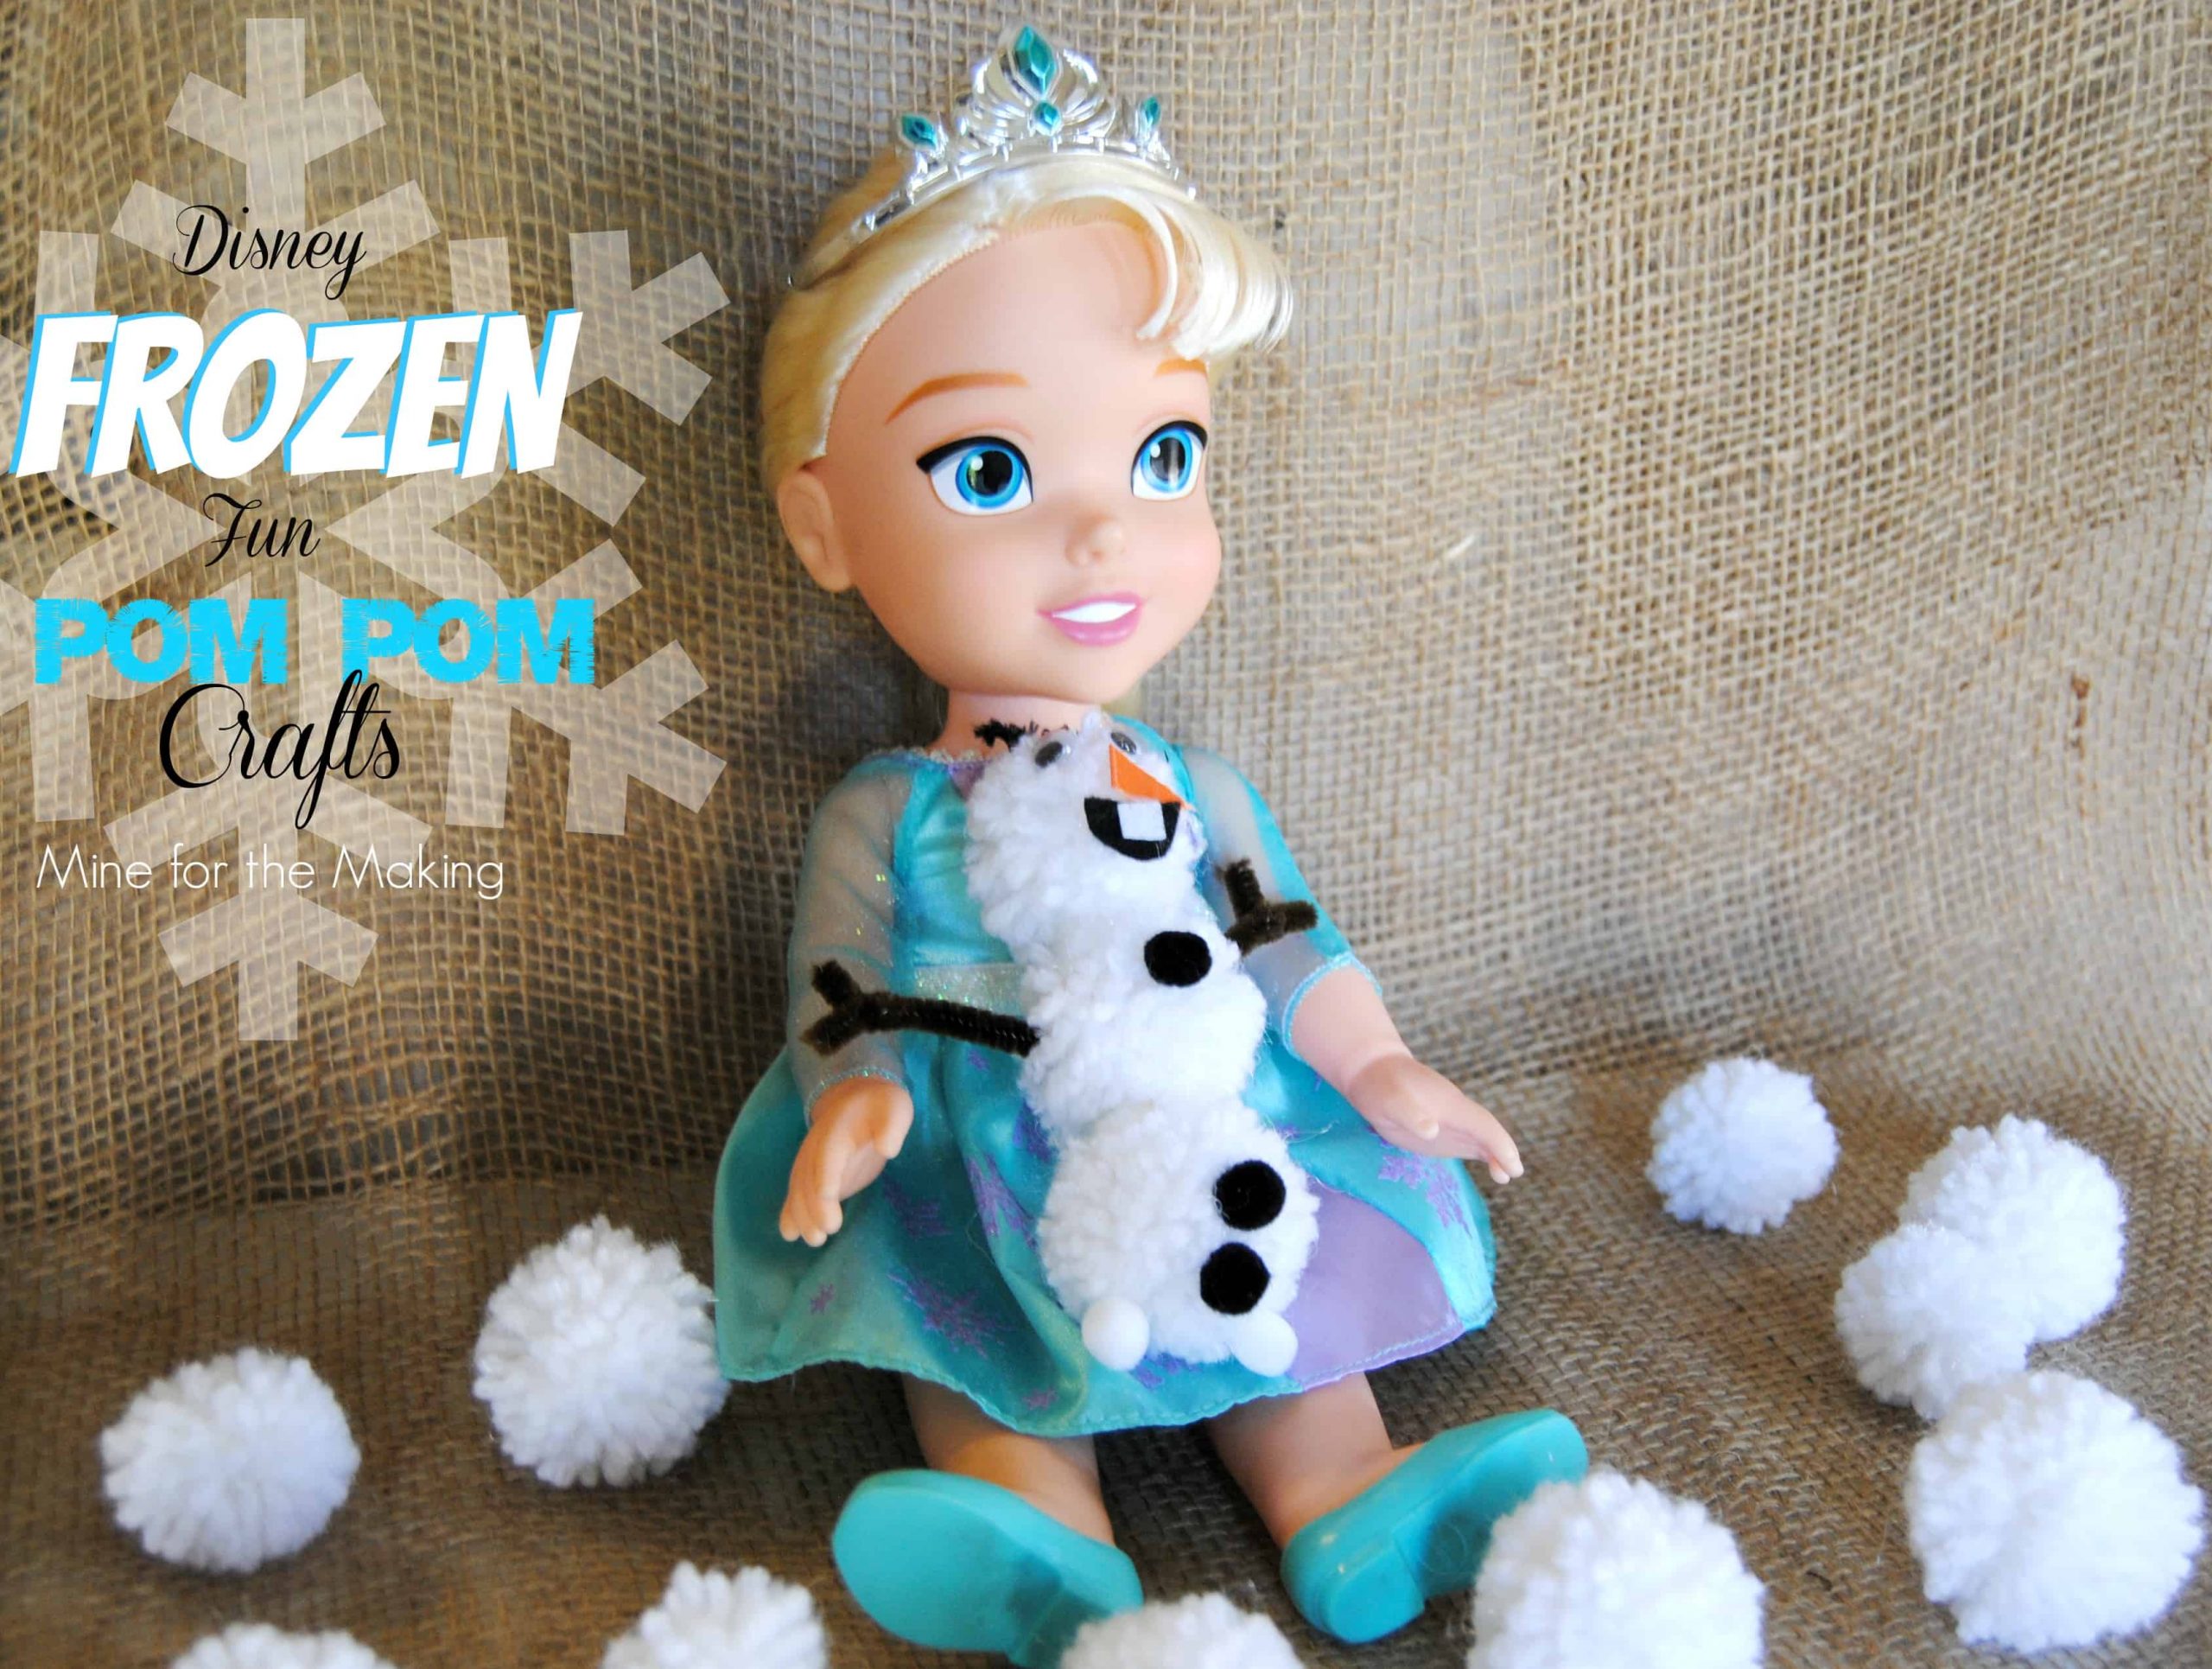 Una delicia de Disney: 13 divertidas manualidades para niños inspiradas en Frozen